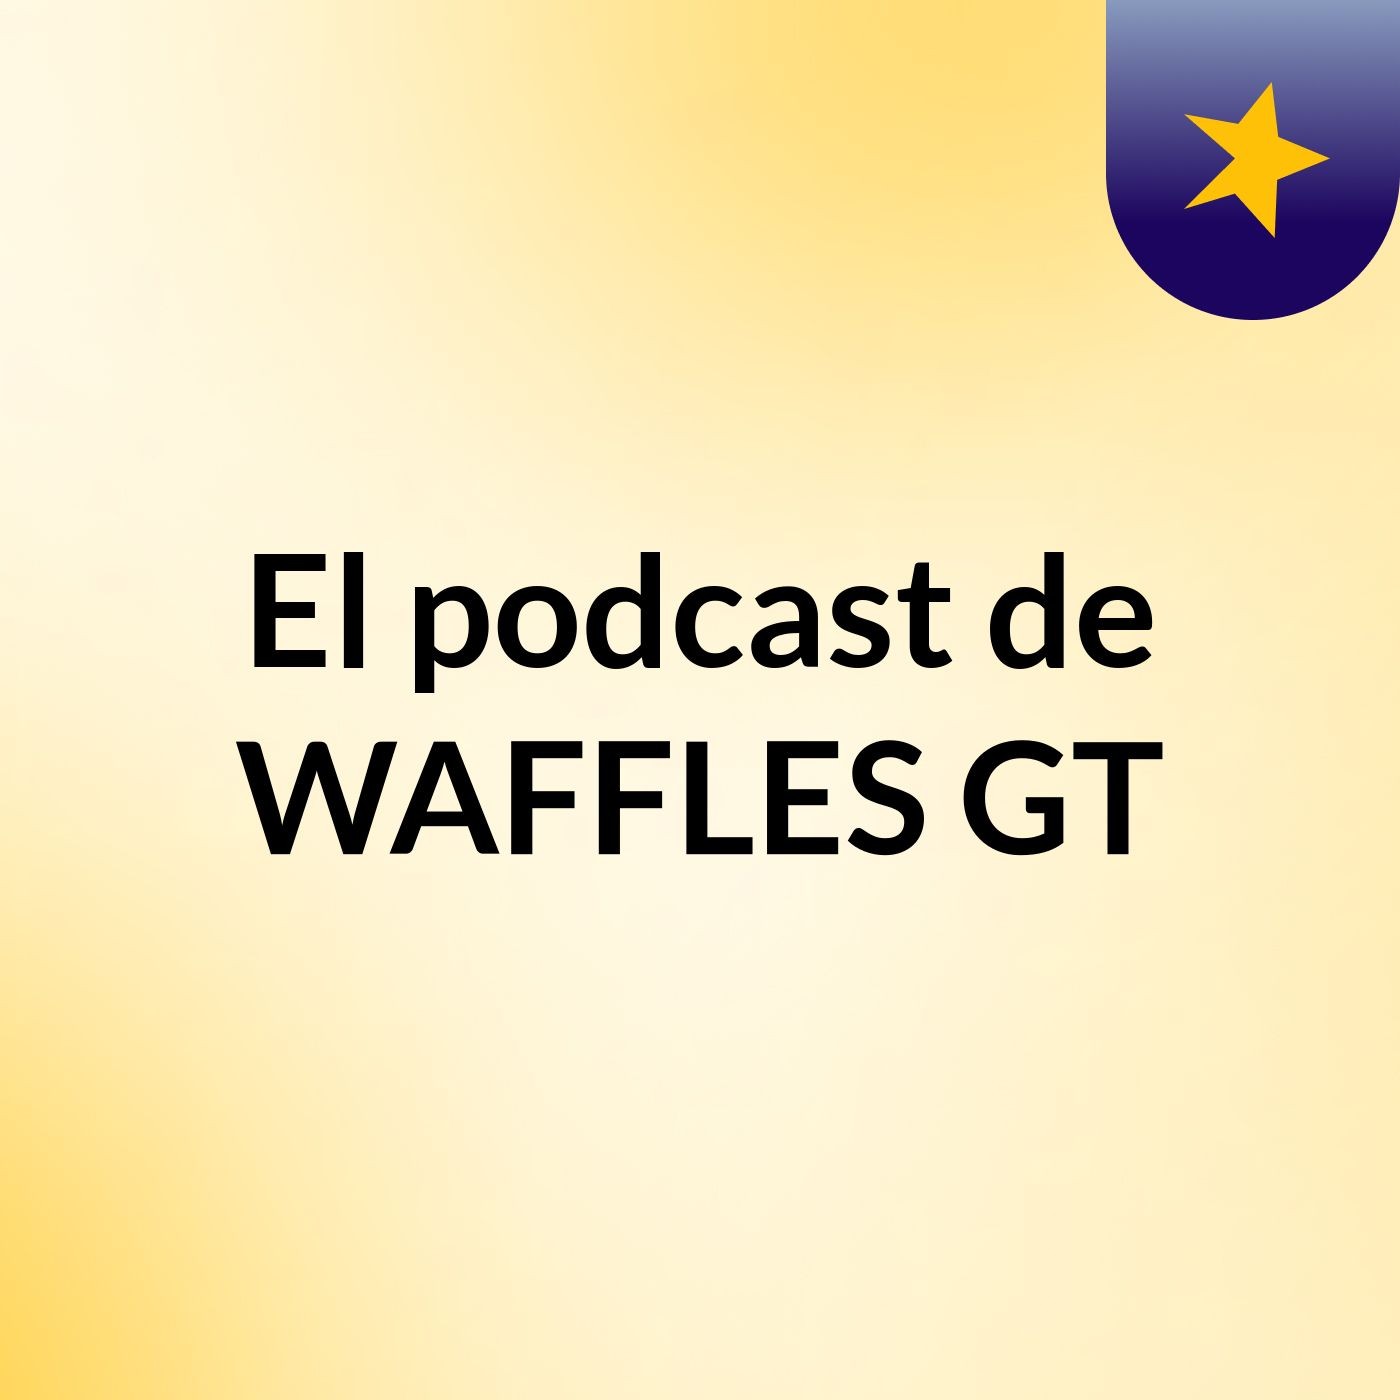 El podcast de WAFFLES GT